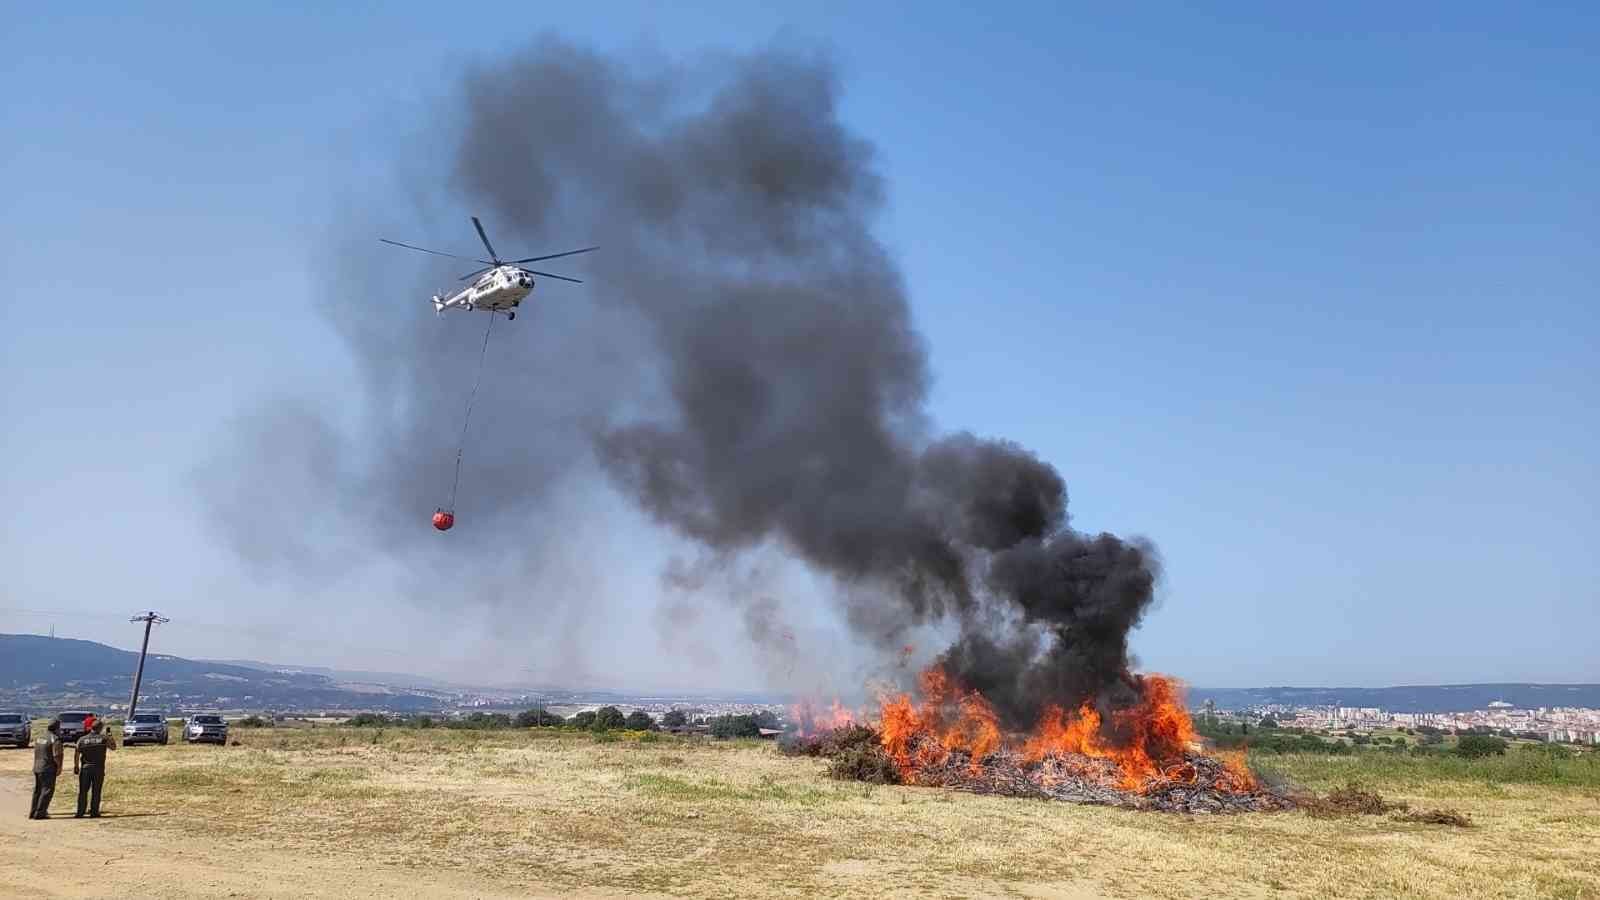 Çanakkale Orman Bölge Müdürlüğü tarafından yaz sezonu öncesi orman yangınları tatbikatı gerçekleştirildi. Yangın söndürme helikopterinin de ...